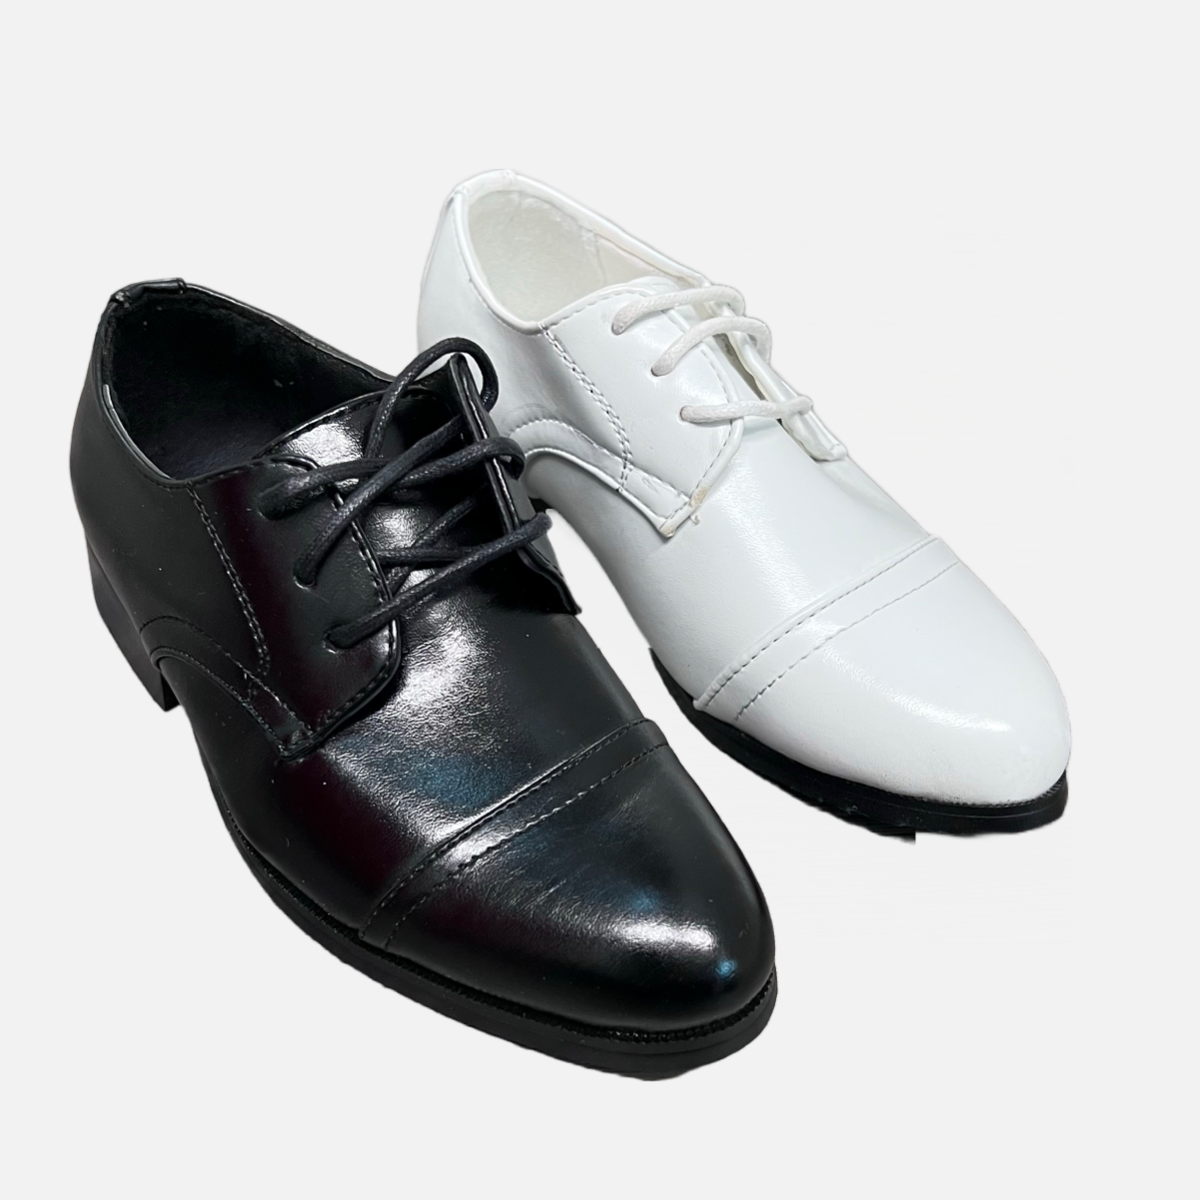 Boys Oxford Dress Shoe